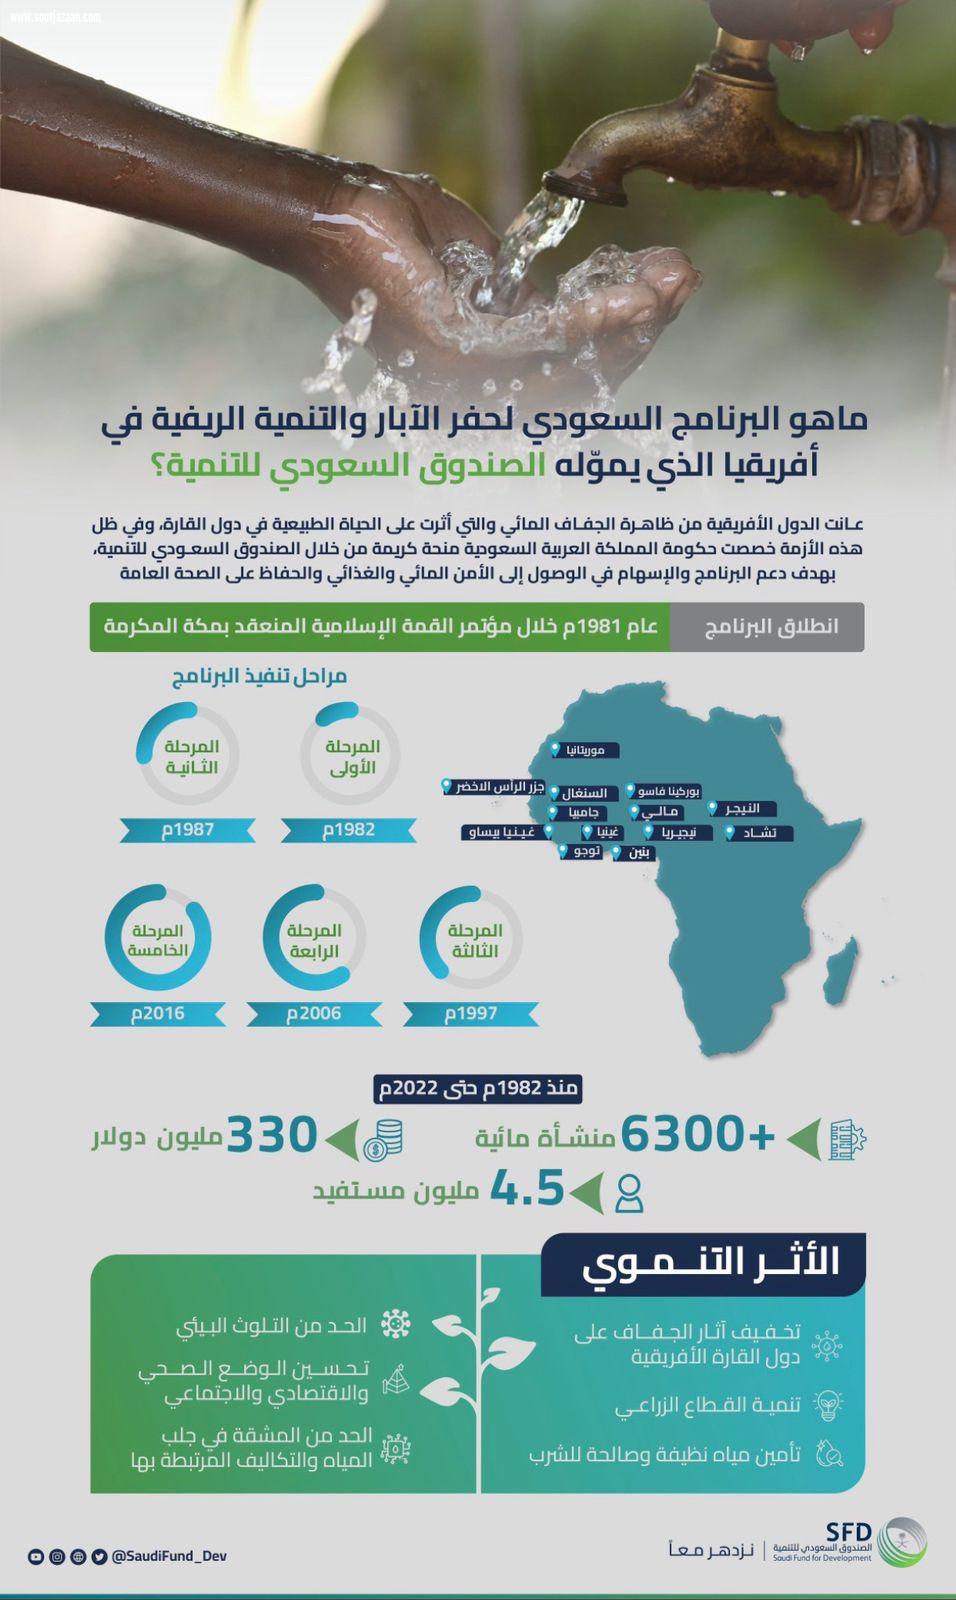 الصندوق السعودي للتنمية يُوقّع مذكرة تفاهم ضمن المرحلة الخامسة من البرنامج السعودي لحفر الآبار والتنمية الريفية في أفريقيا  .